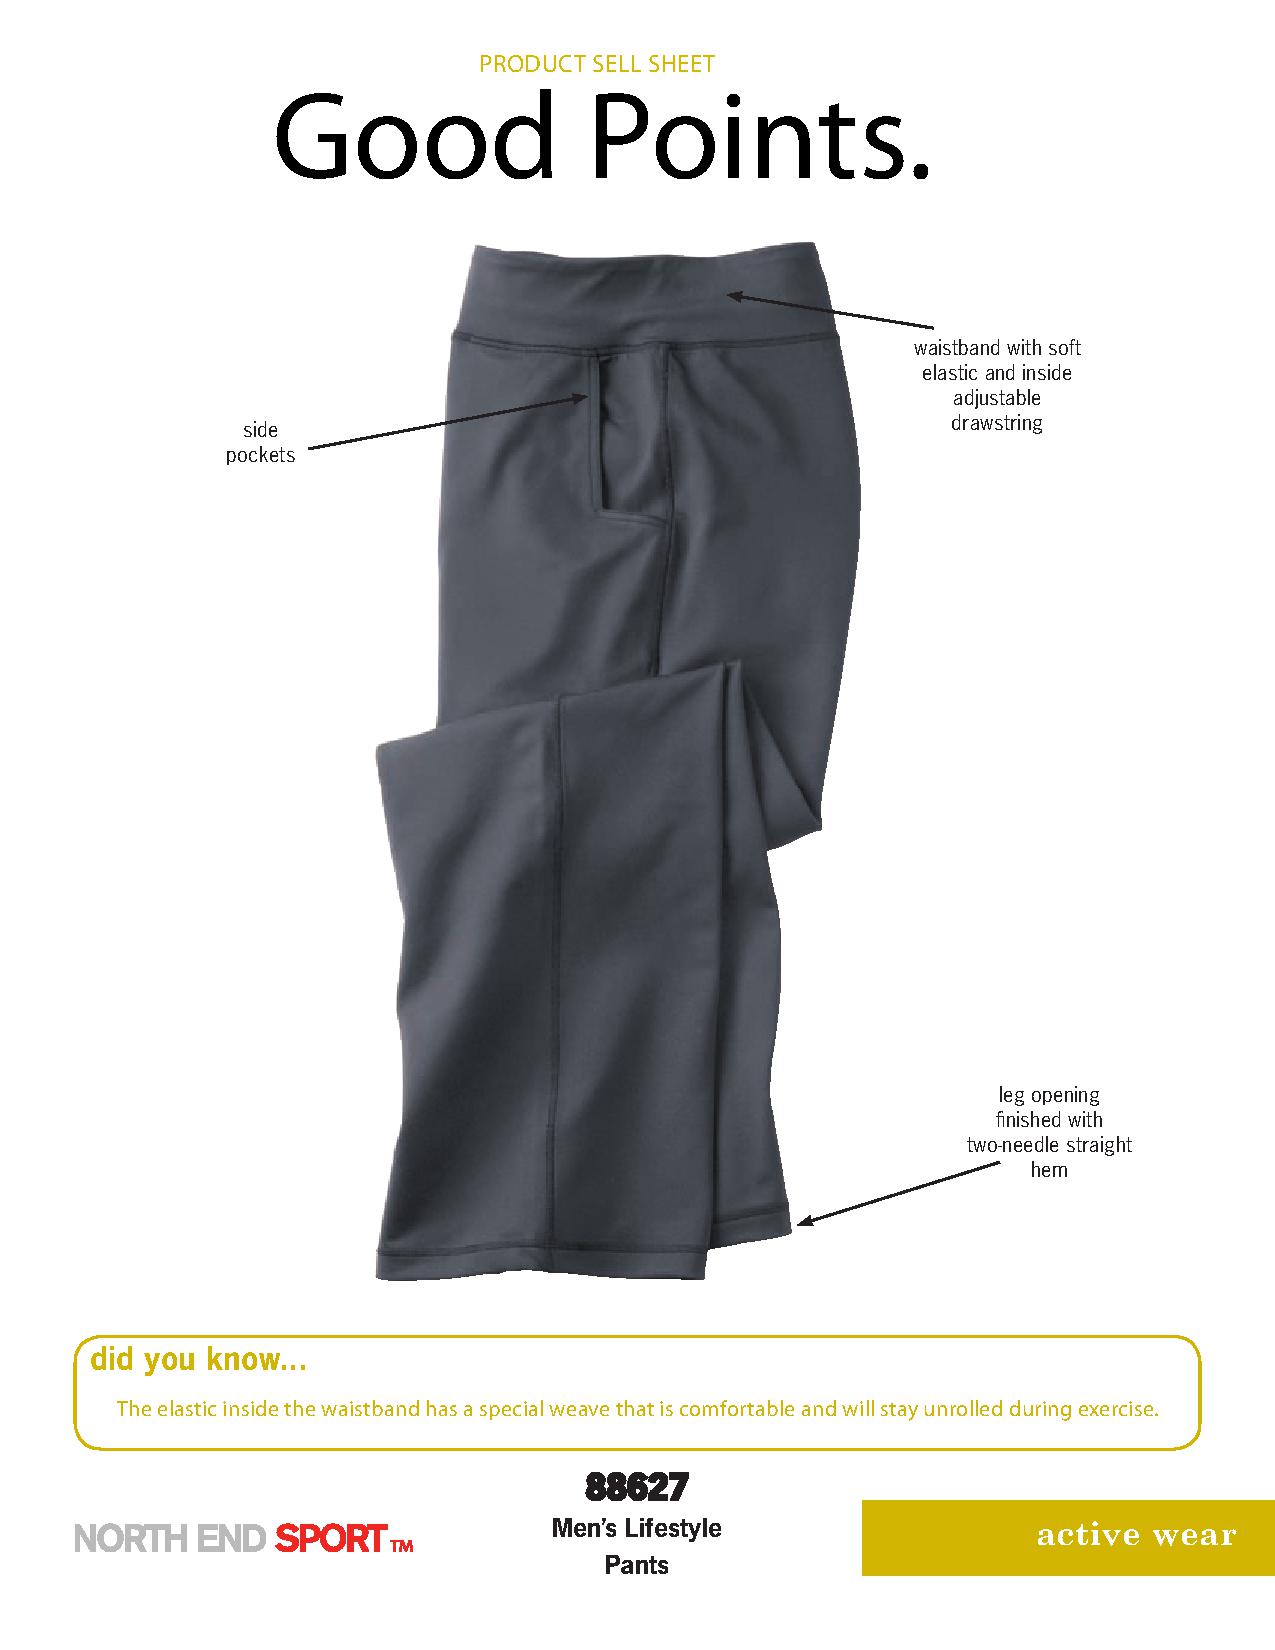 Ash City Lifestyle Separates 88627 - Men's Lifestyle Pants